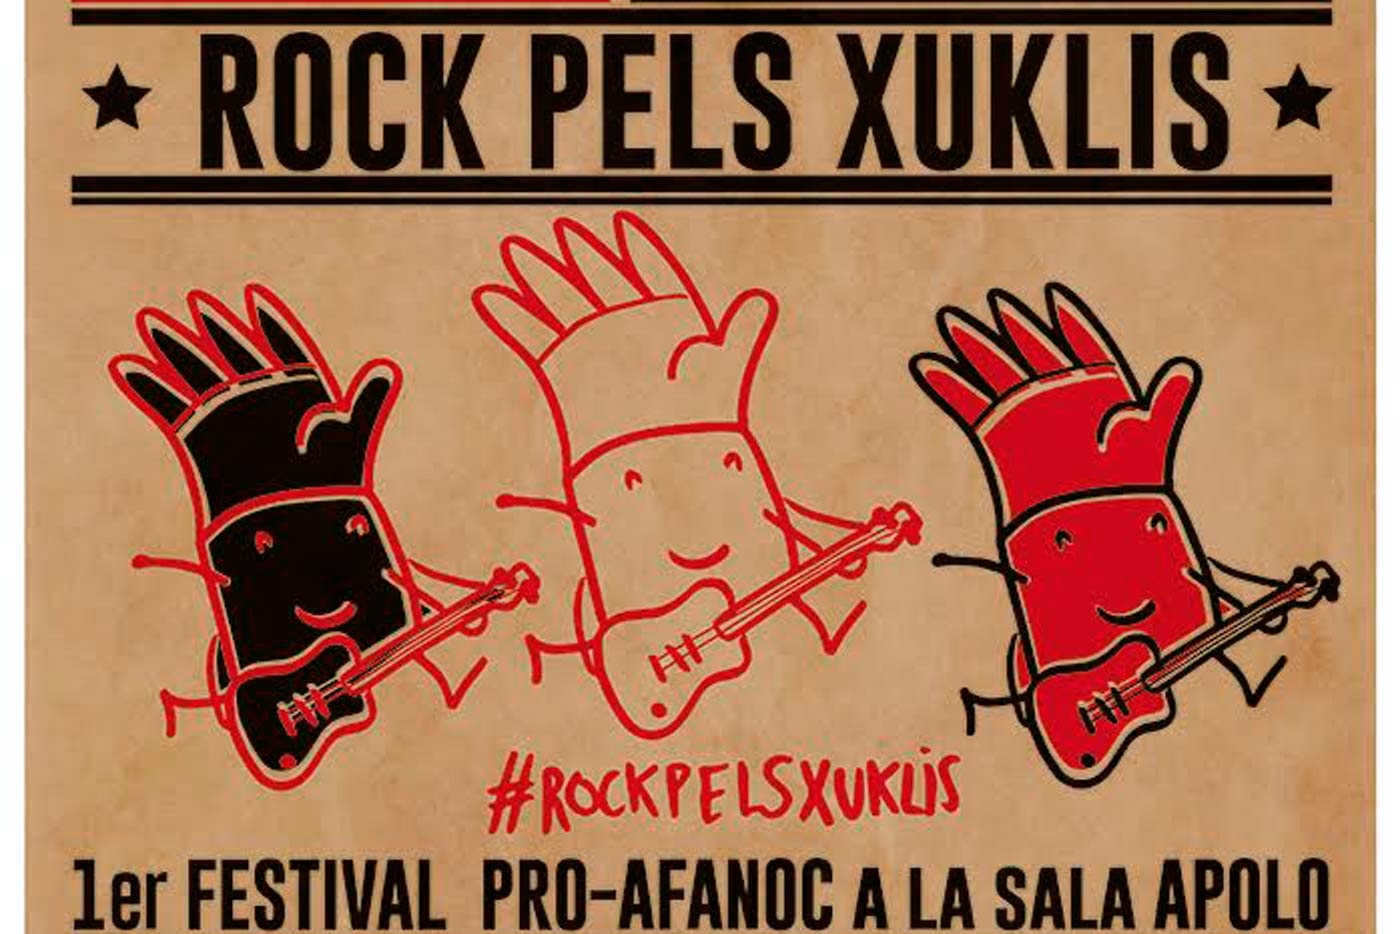 Llega el Xuklis Festival a la Sala Apolo